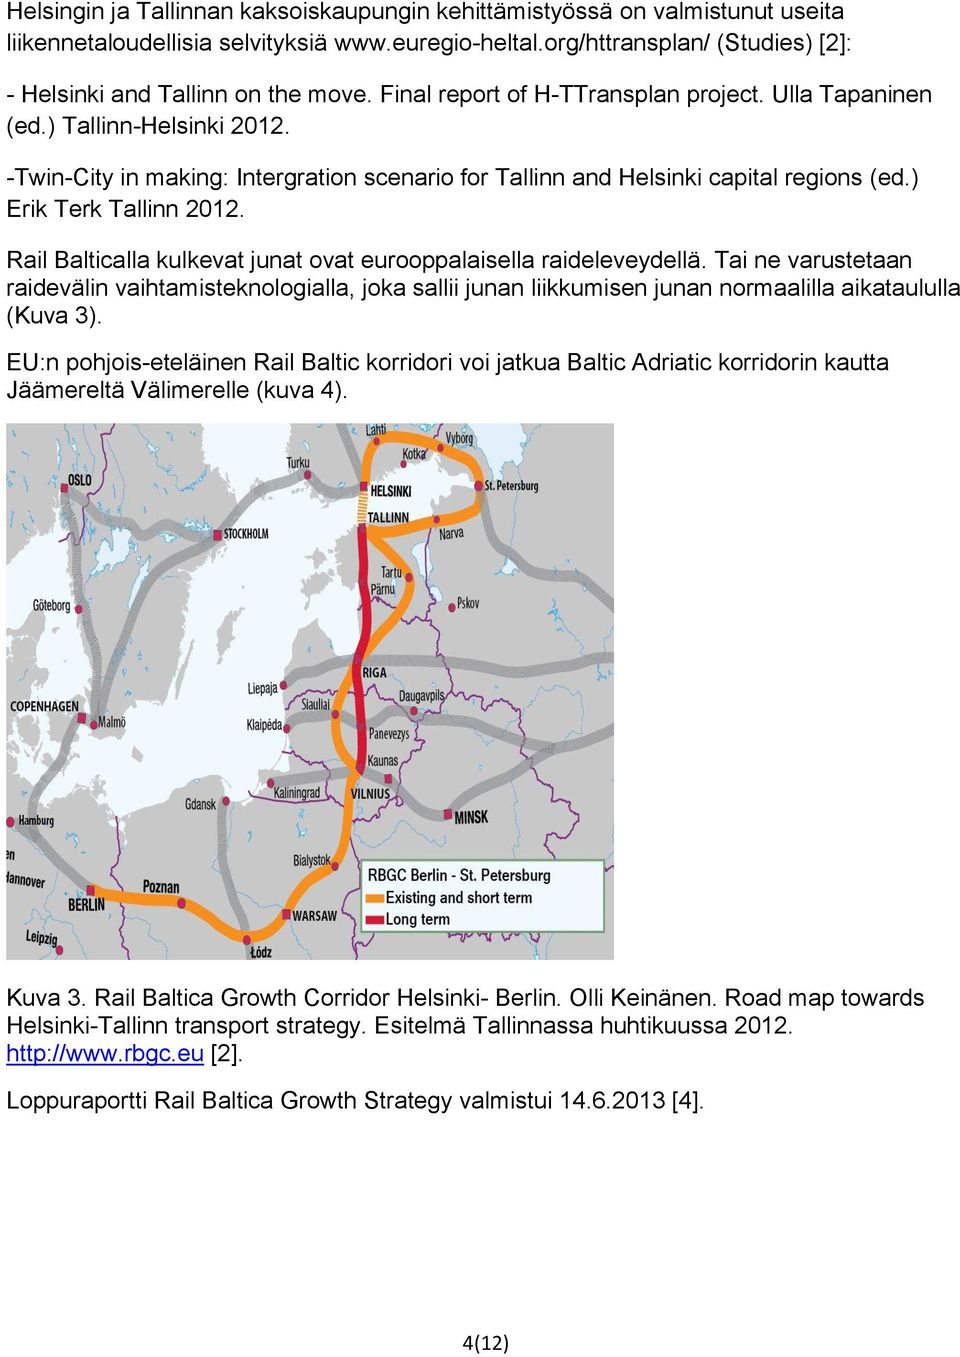 Rail Balticalla kulkevat junat ovat eurooppalaisella raideleveydellä. Tai ne varustetaan raidevälin vaihtamisteknologialla, joka sallii junan liikkumisen junan normaalilla aikataululla (Kuva 3).